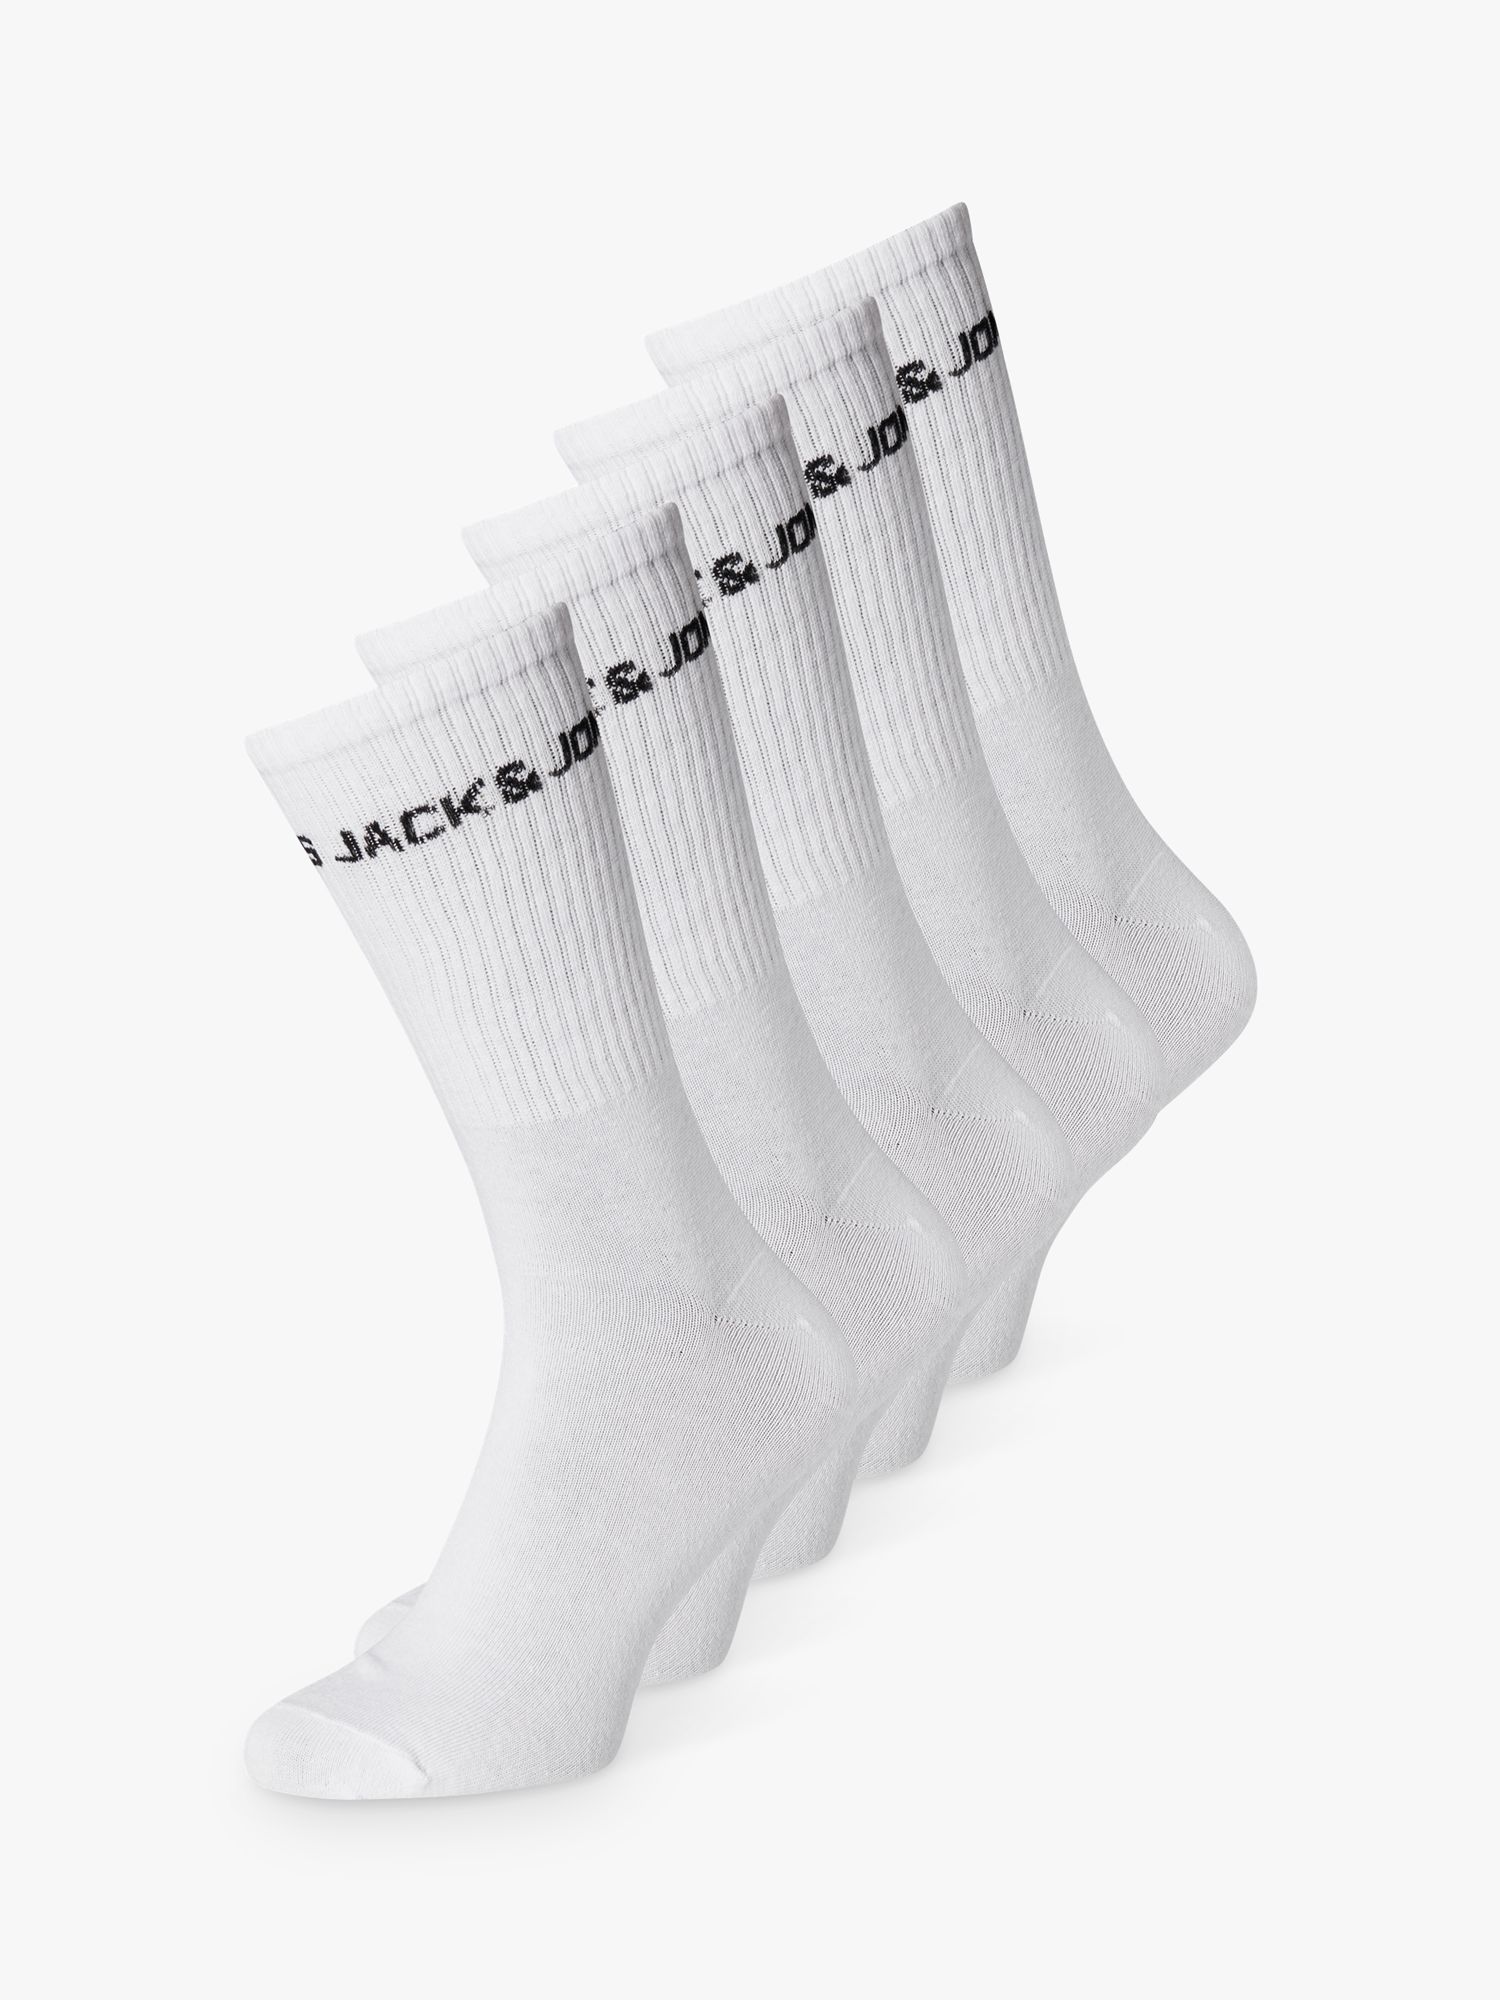 Jack & Jones Kids' Sports Socks, Pack of 5, White, S-M